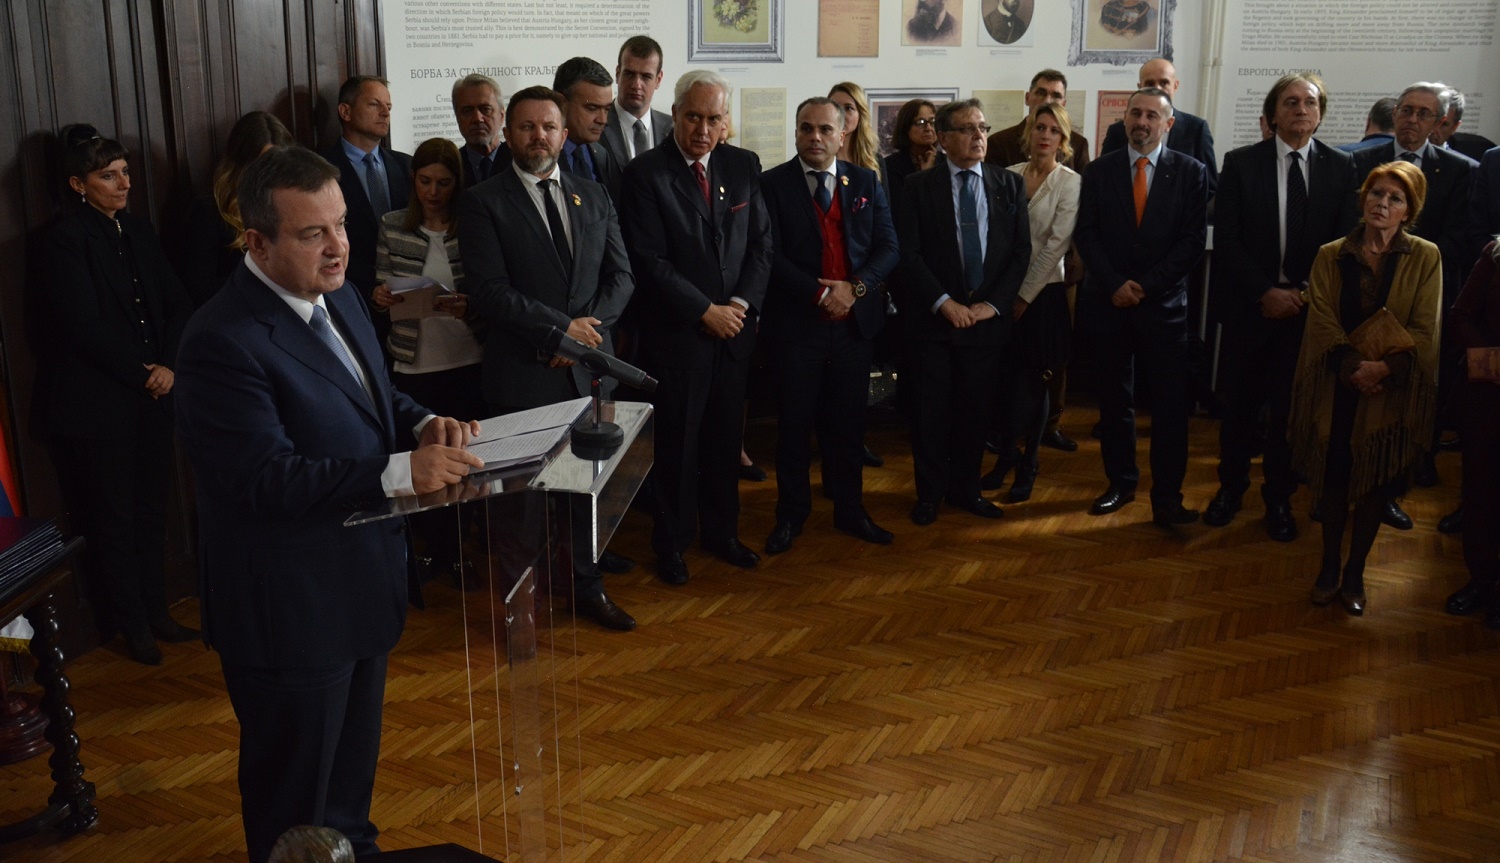 Отварање изложбе "Сва лица српског дипломате Нушића"